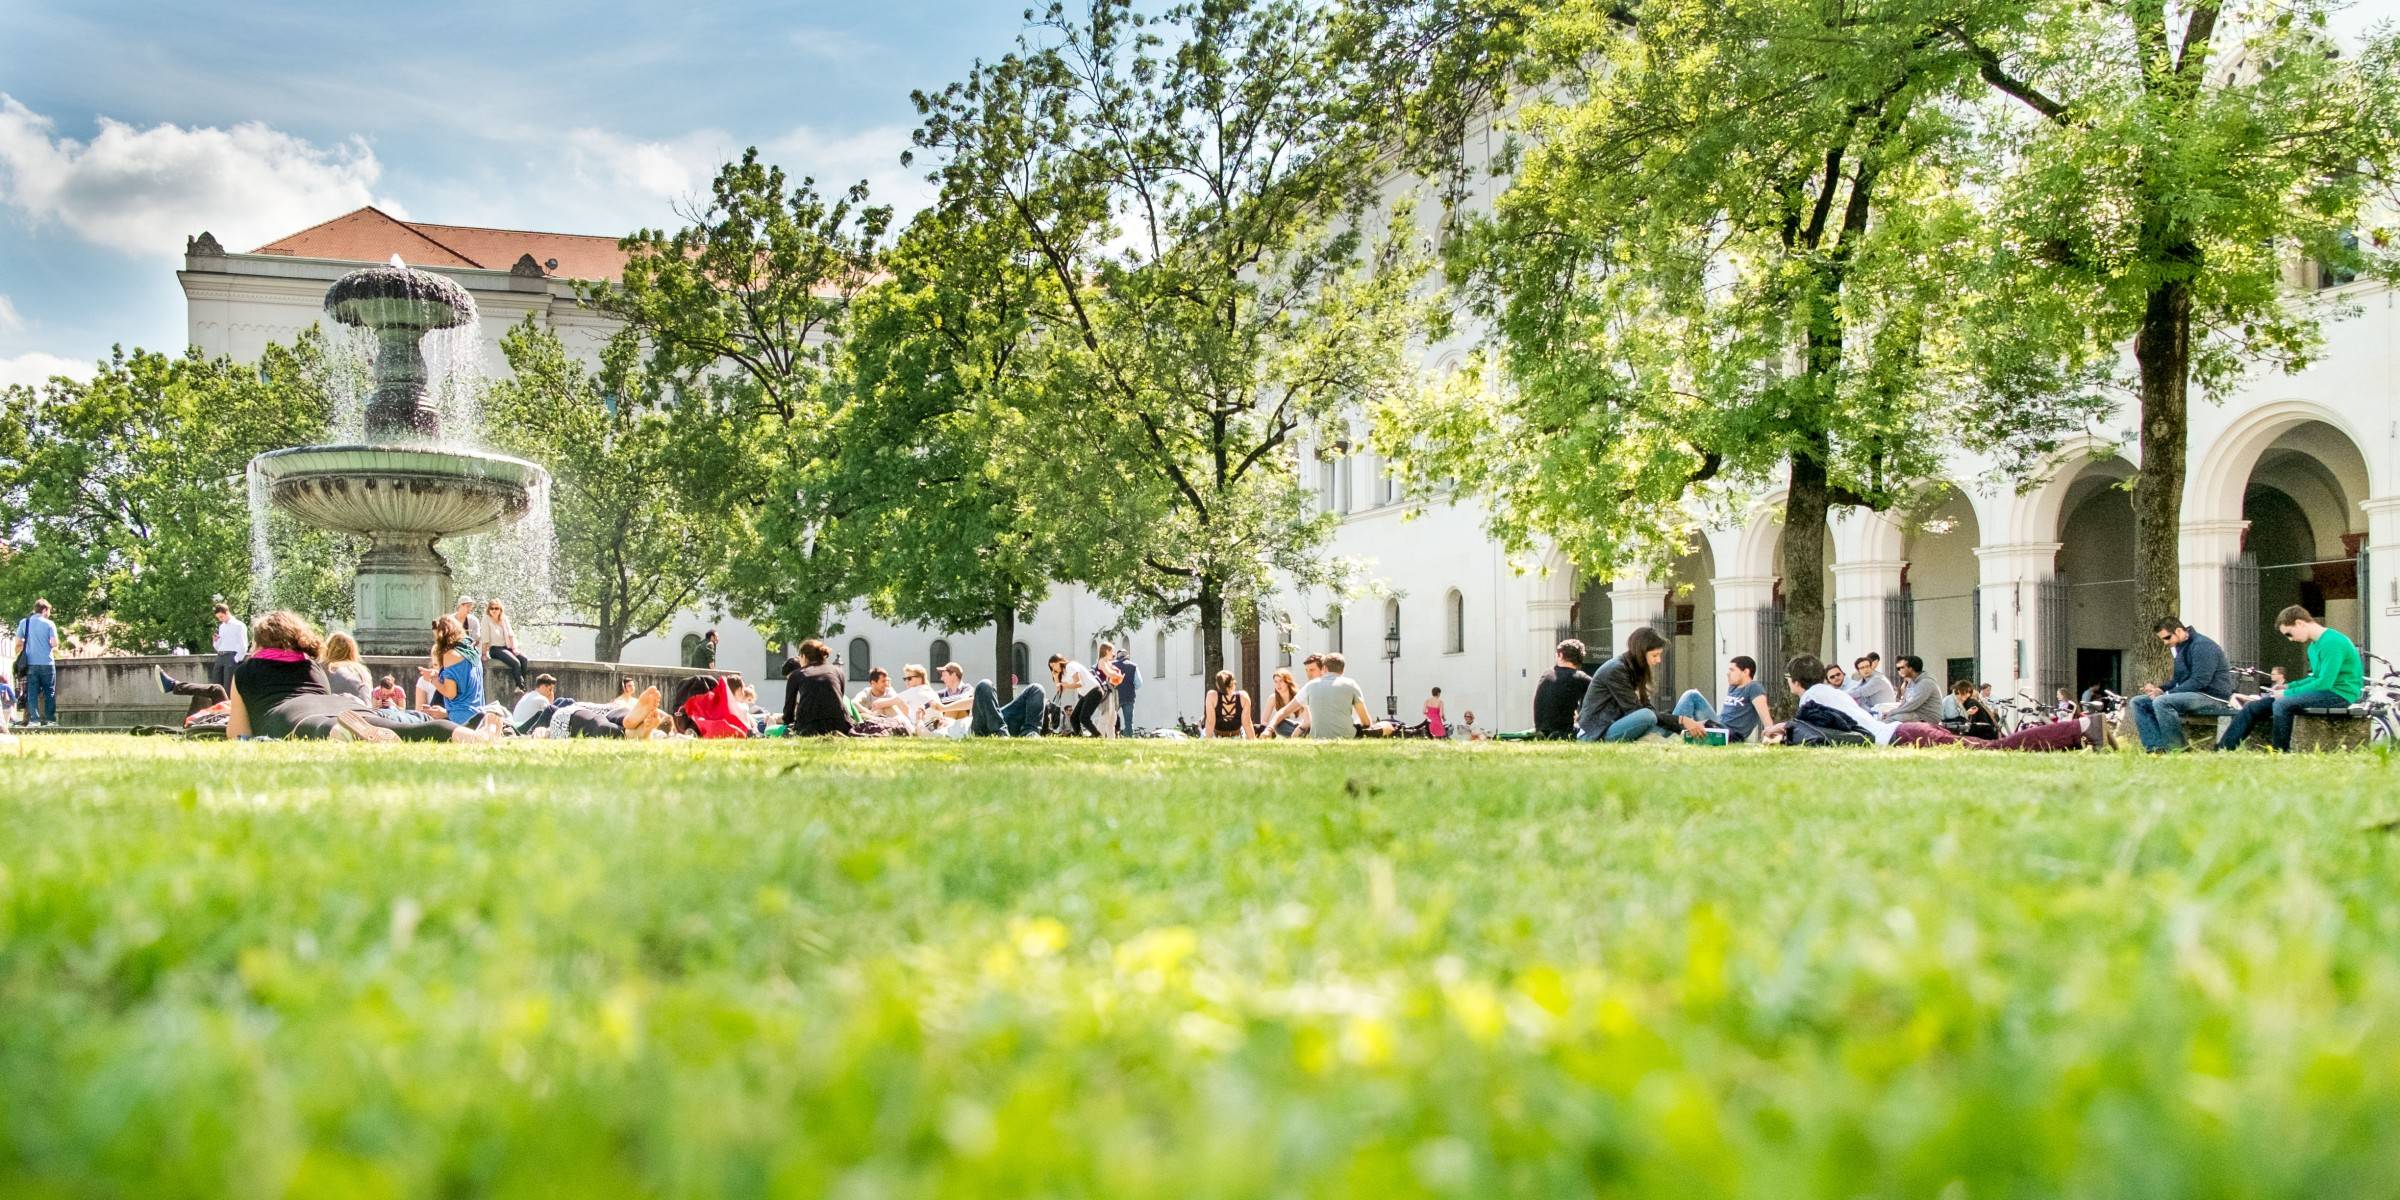 慕尼黑大学是由慕尼黑的研究机构,大学校园,基金会和企业共同组合构成